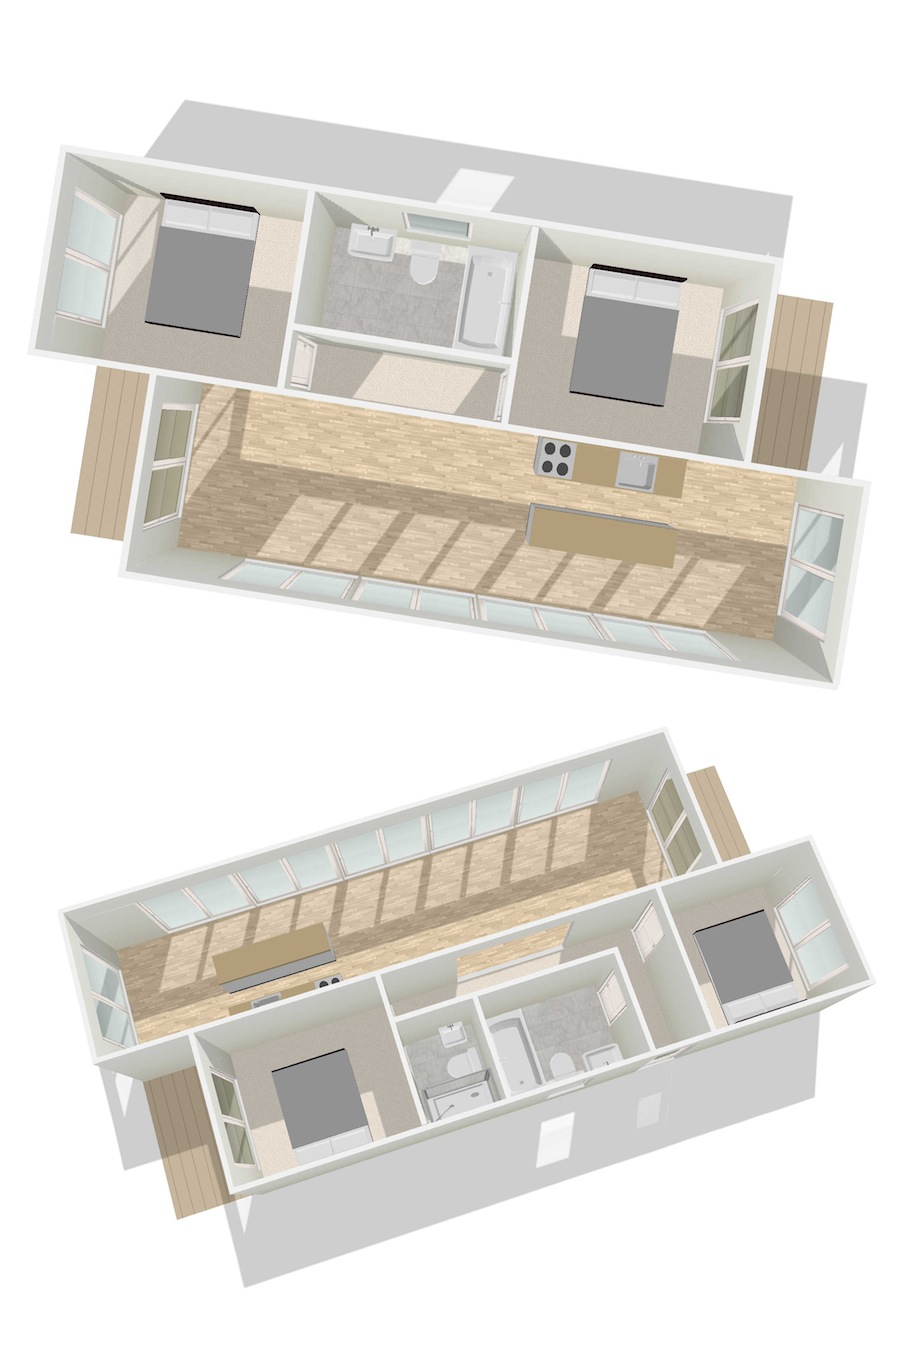 Mobile-Home-Floor-Plans-3d-p7